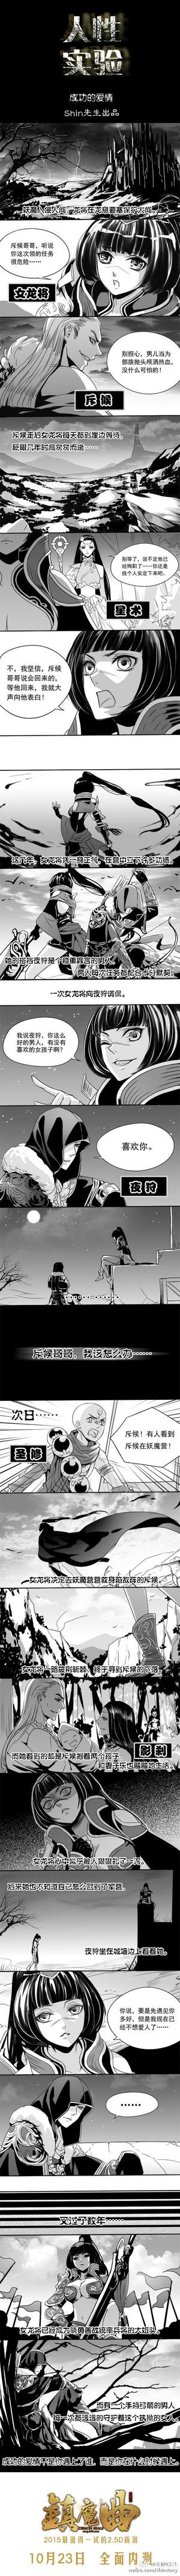 《人性实验·成功的爱情》by Shin先生     夜狩×女龙将 一对不错的CP呢~